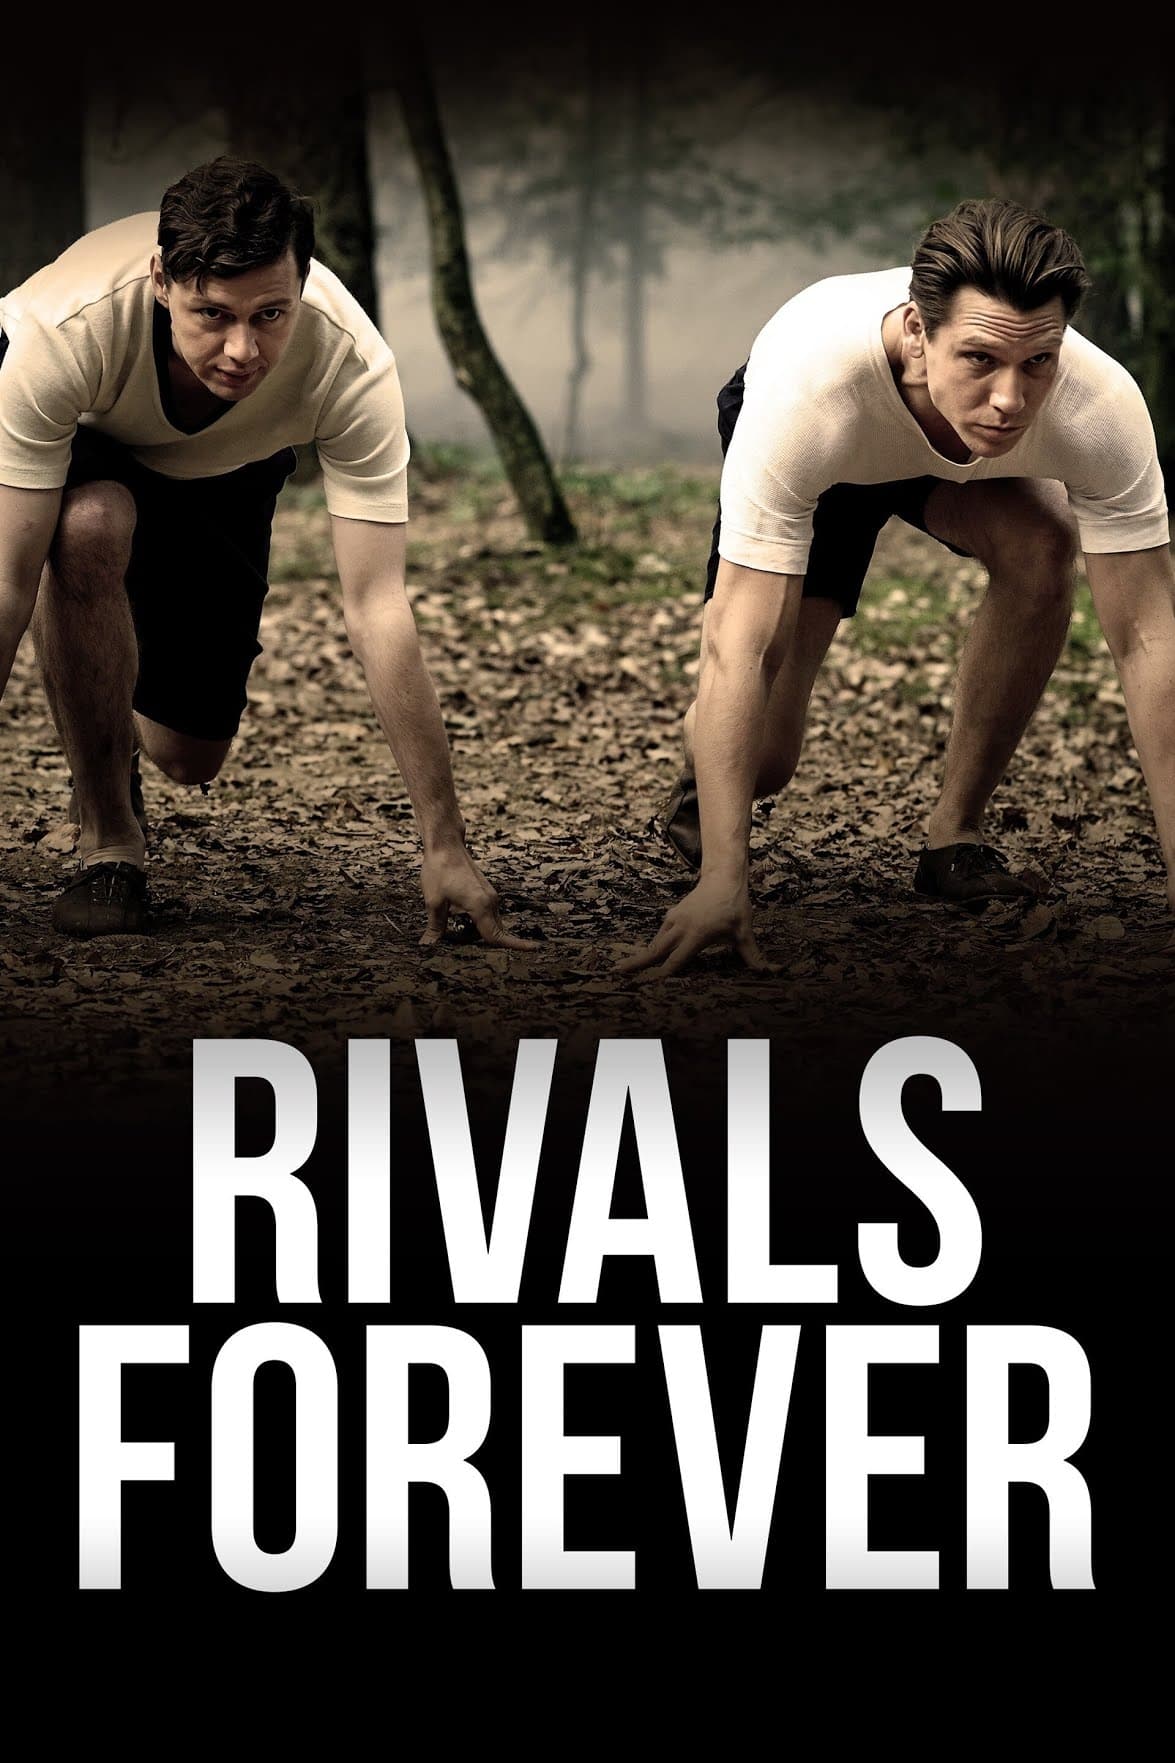 Rivals Forever - The Sneaker Battle (2017)